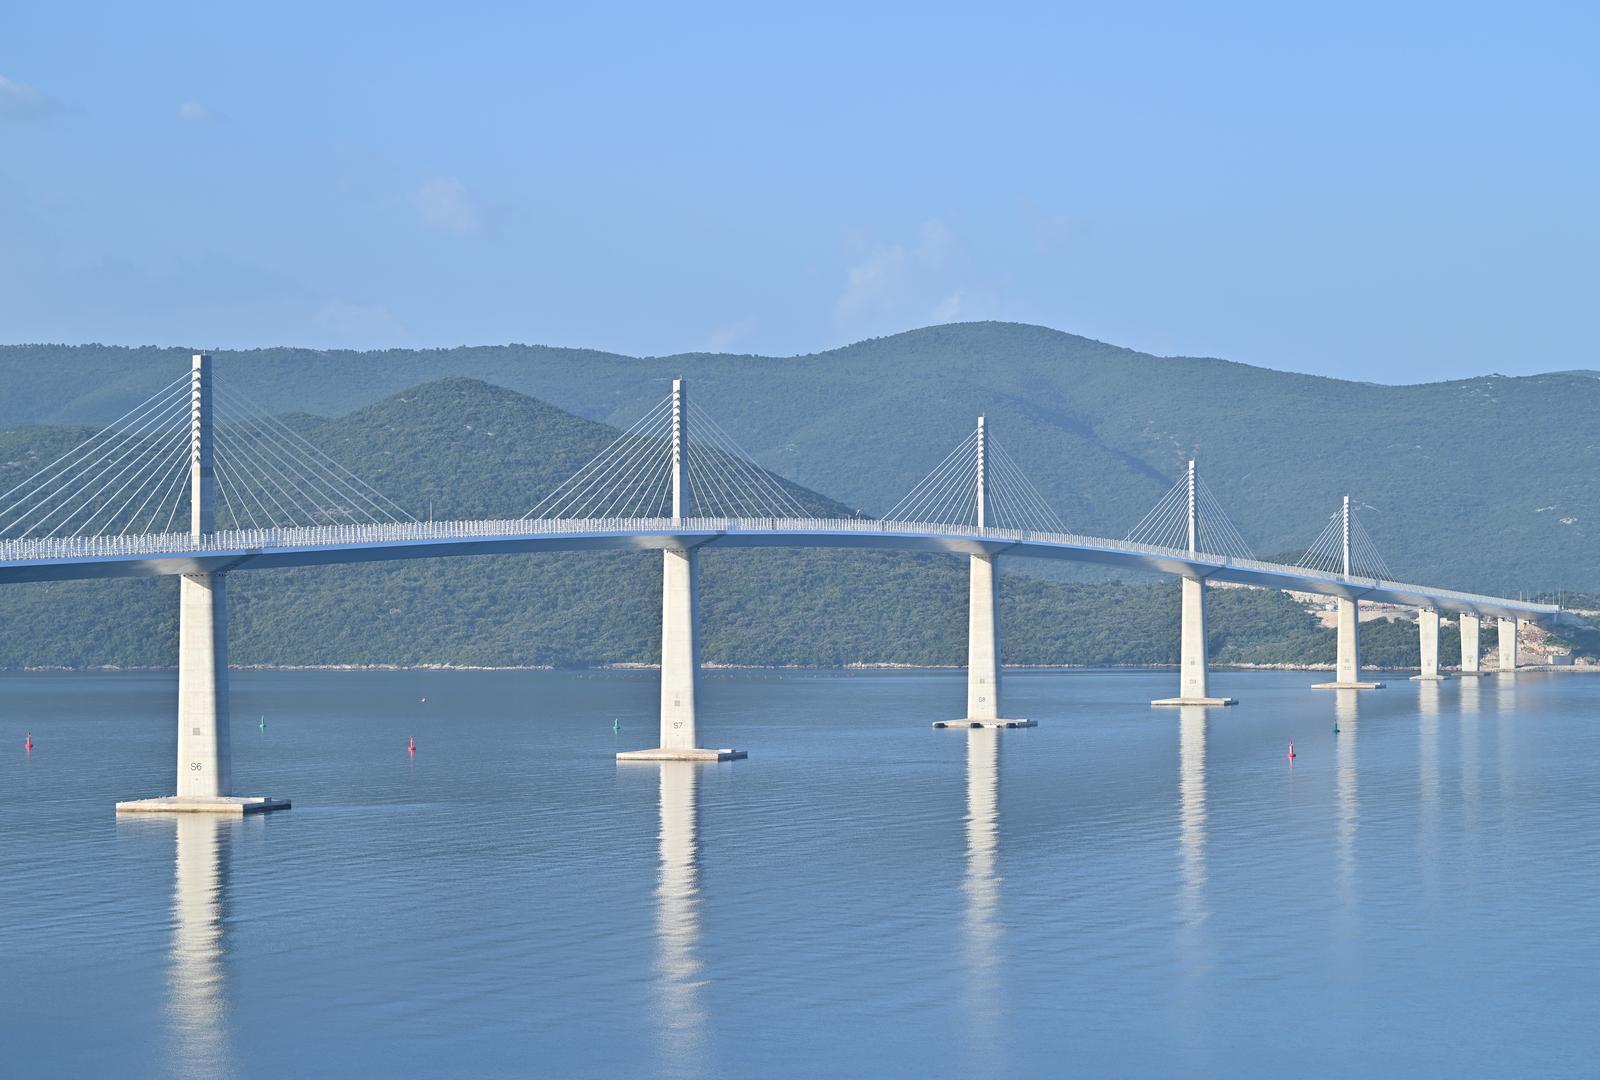 26.07.2023., Pogled na Peljeski most koji je otvoren 26. srpnja 2022. godine. Most je  dugacak 2404 metara i naveca visina iznad mora iznosi 55 metara. Glavna je prometna poveznica kontinentalne Hrvatske s poluotokom Peljescem. Photo: Matko Begovic/PIXSELL